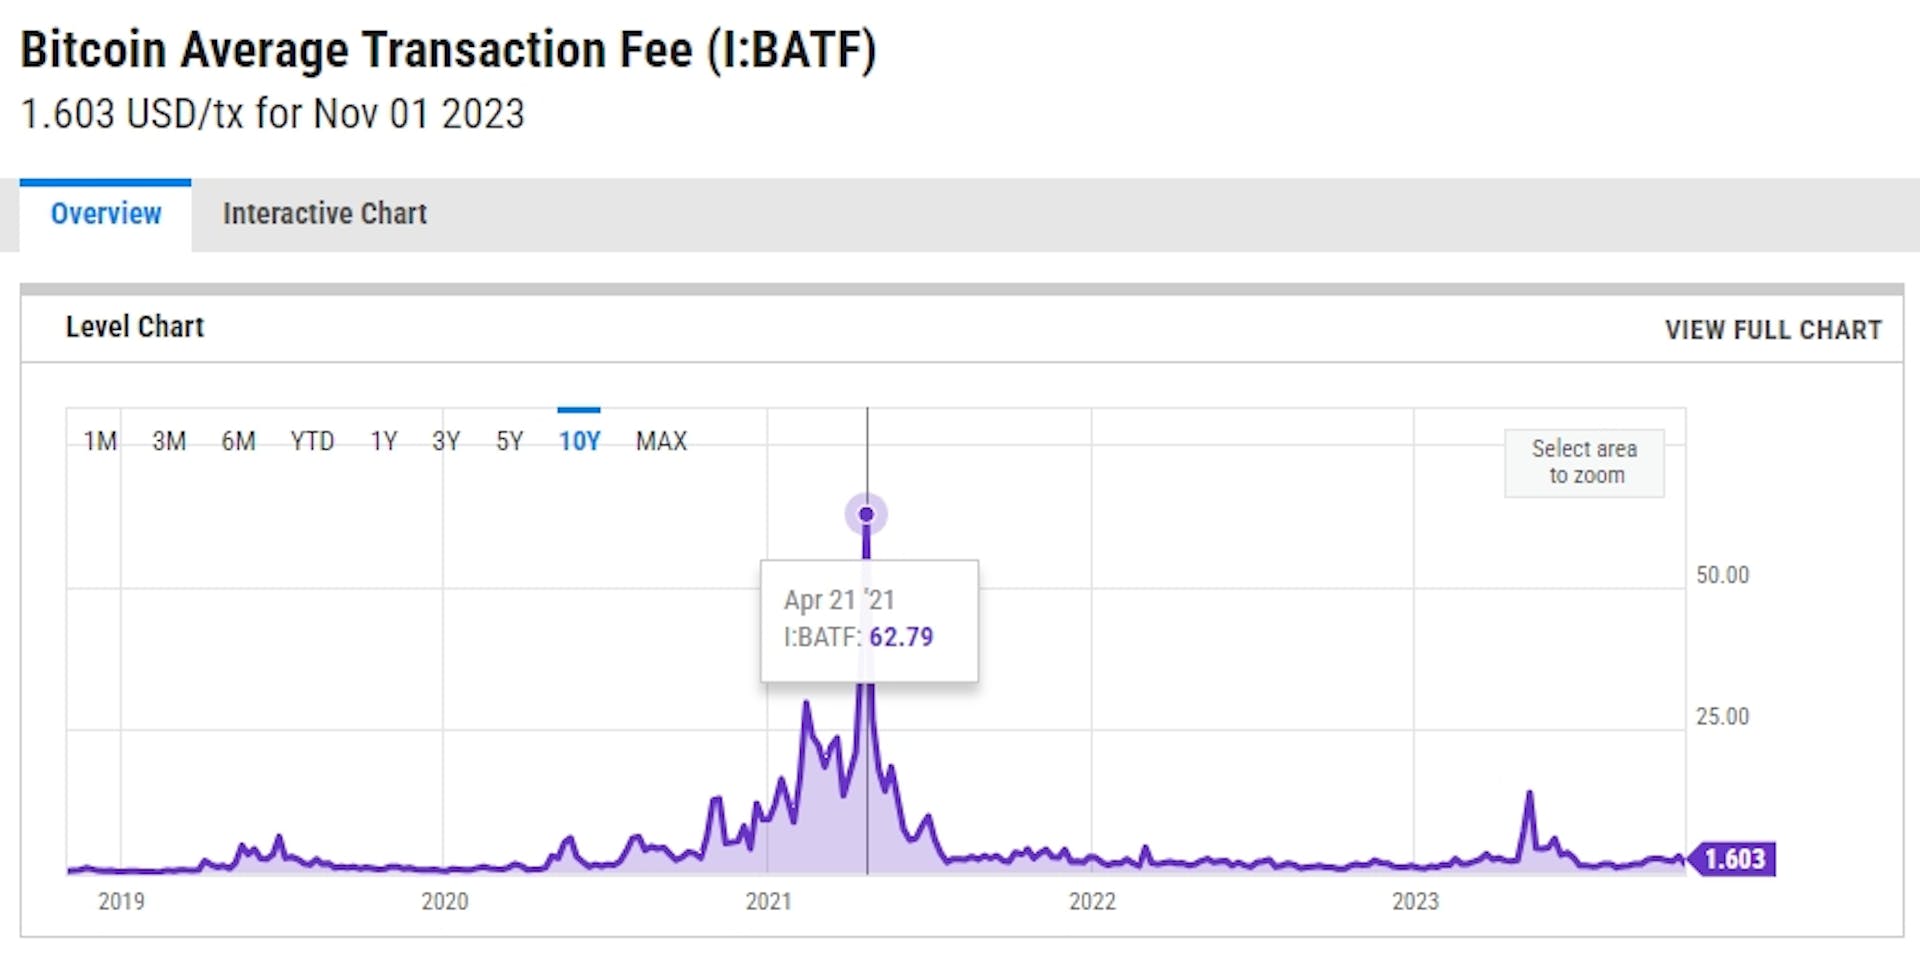 Tarifa de transacción promedio de Bitcoin (con máximo en 2021). Imagen de YCharts